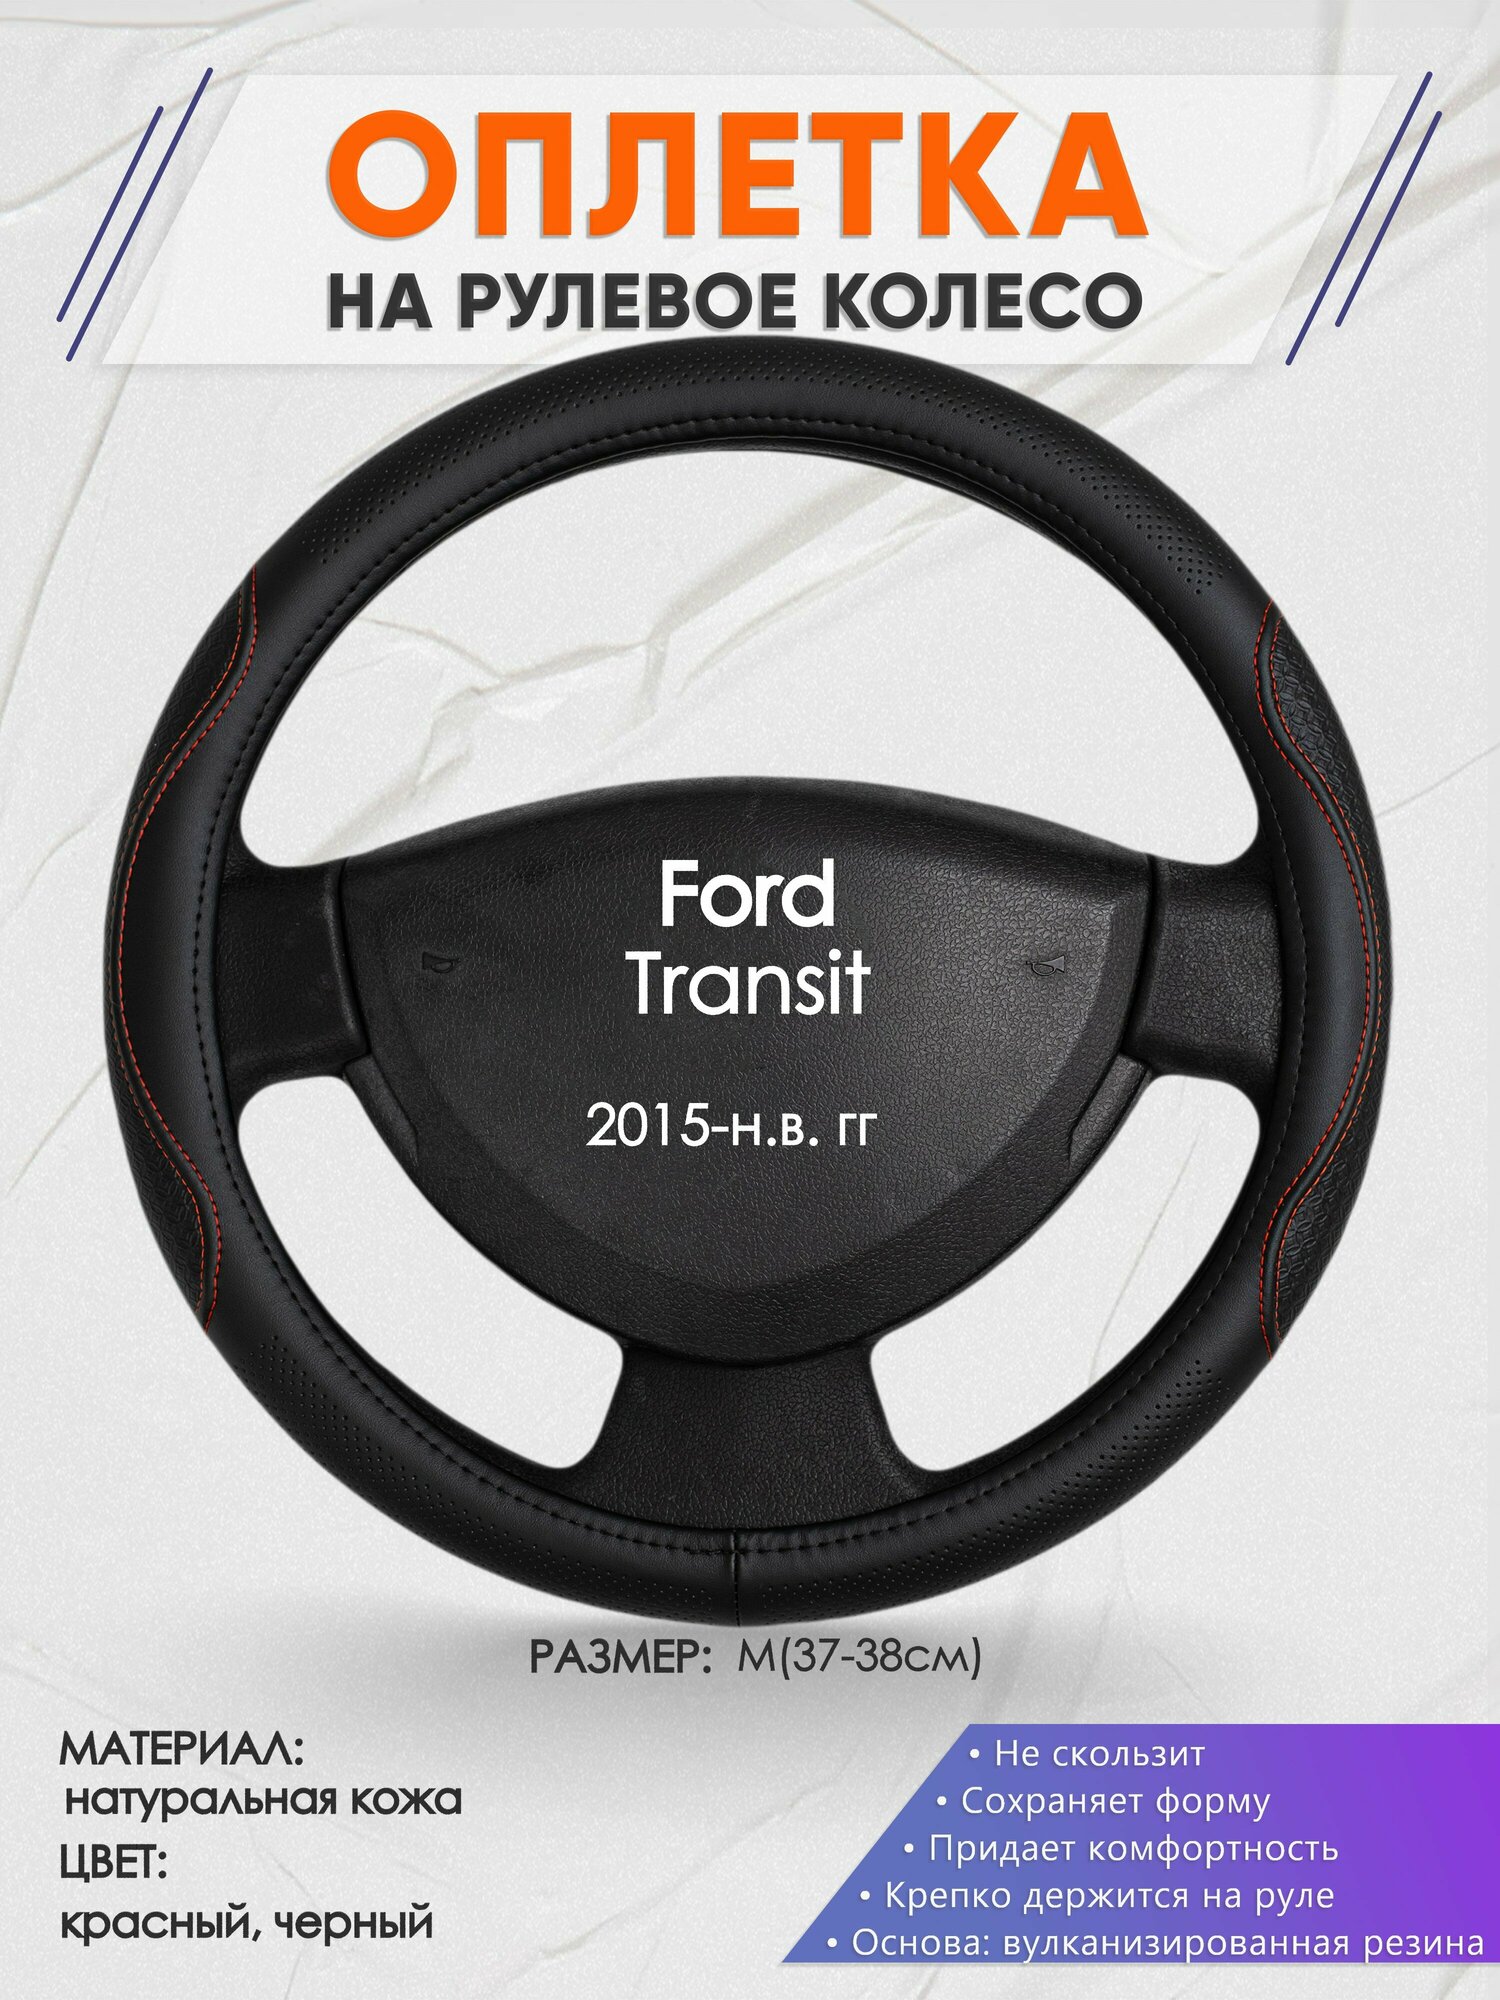 Оплетка на руль для Ford Transit (Форд Транзит) 2015-н. в, M(37-38см), Натуральная кожа 27